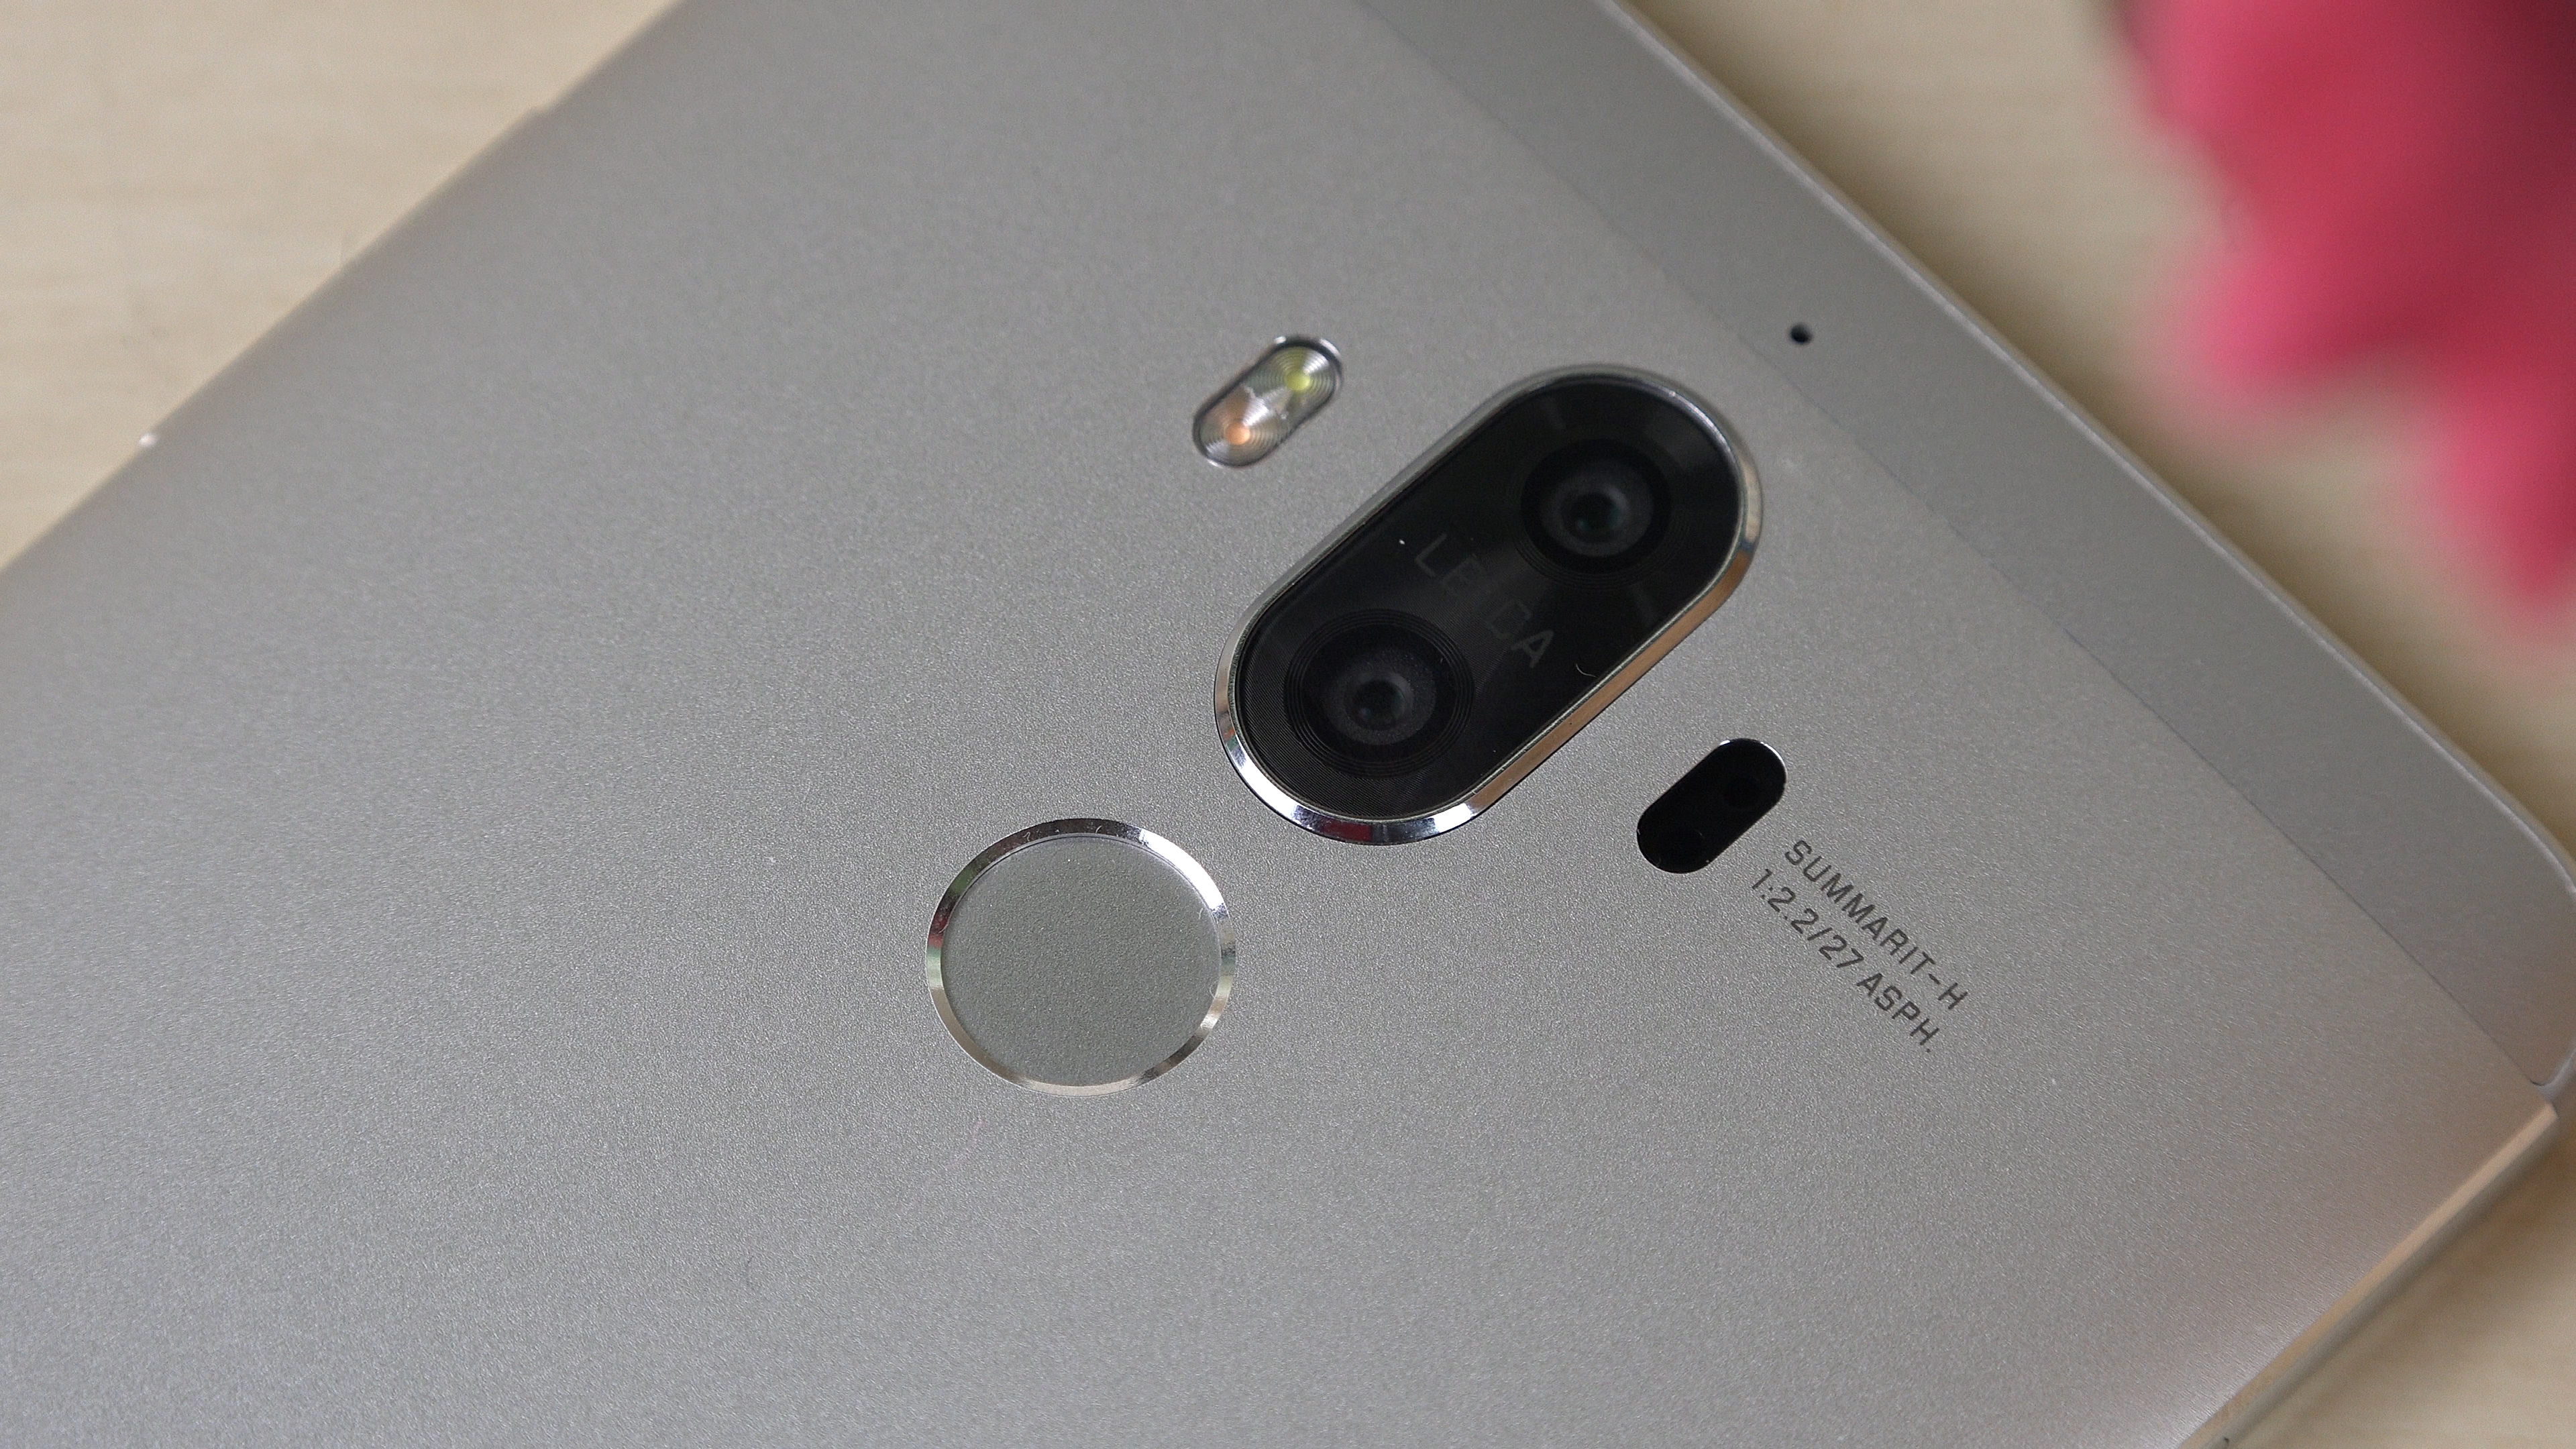 Huawei Mate 9 inceleme 'En iyiyi arayanlar için çift kameralı telefon'